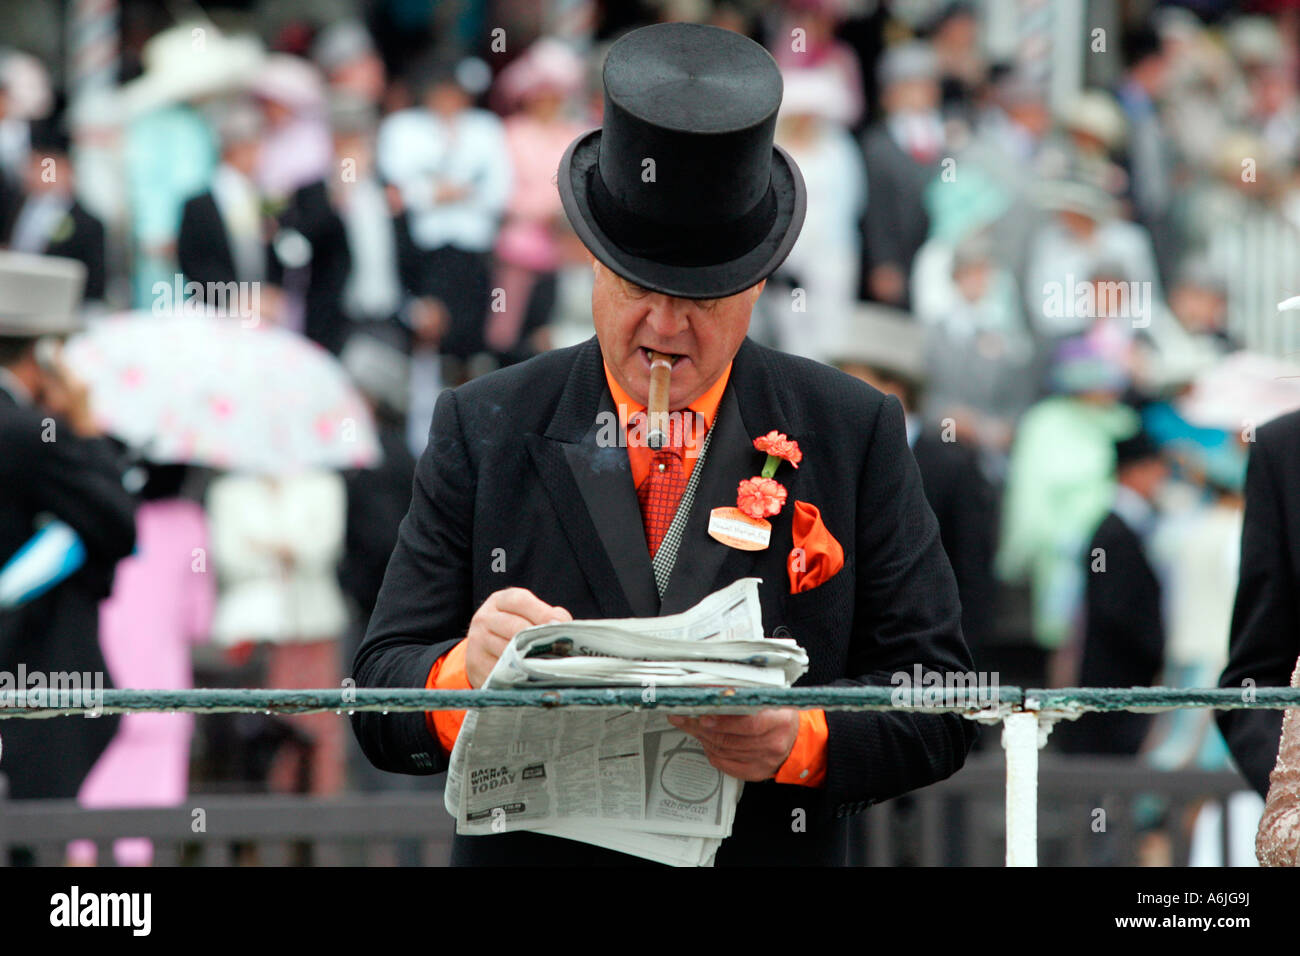 Man smoking a cigar, reading a newspaper at Royal Ascot horse race, York, Great Britain Stock Photo